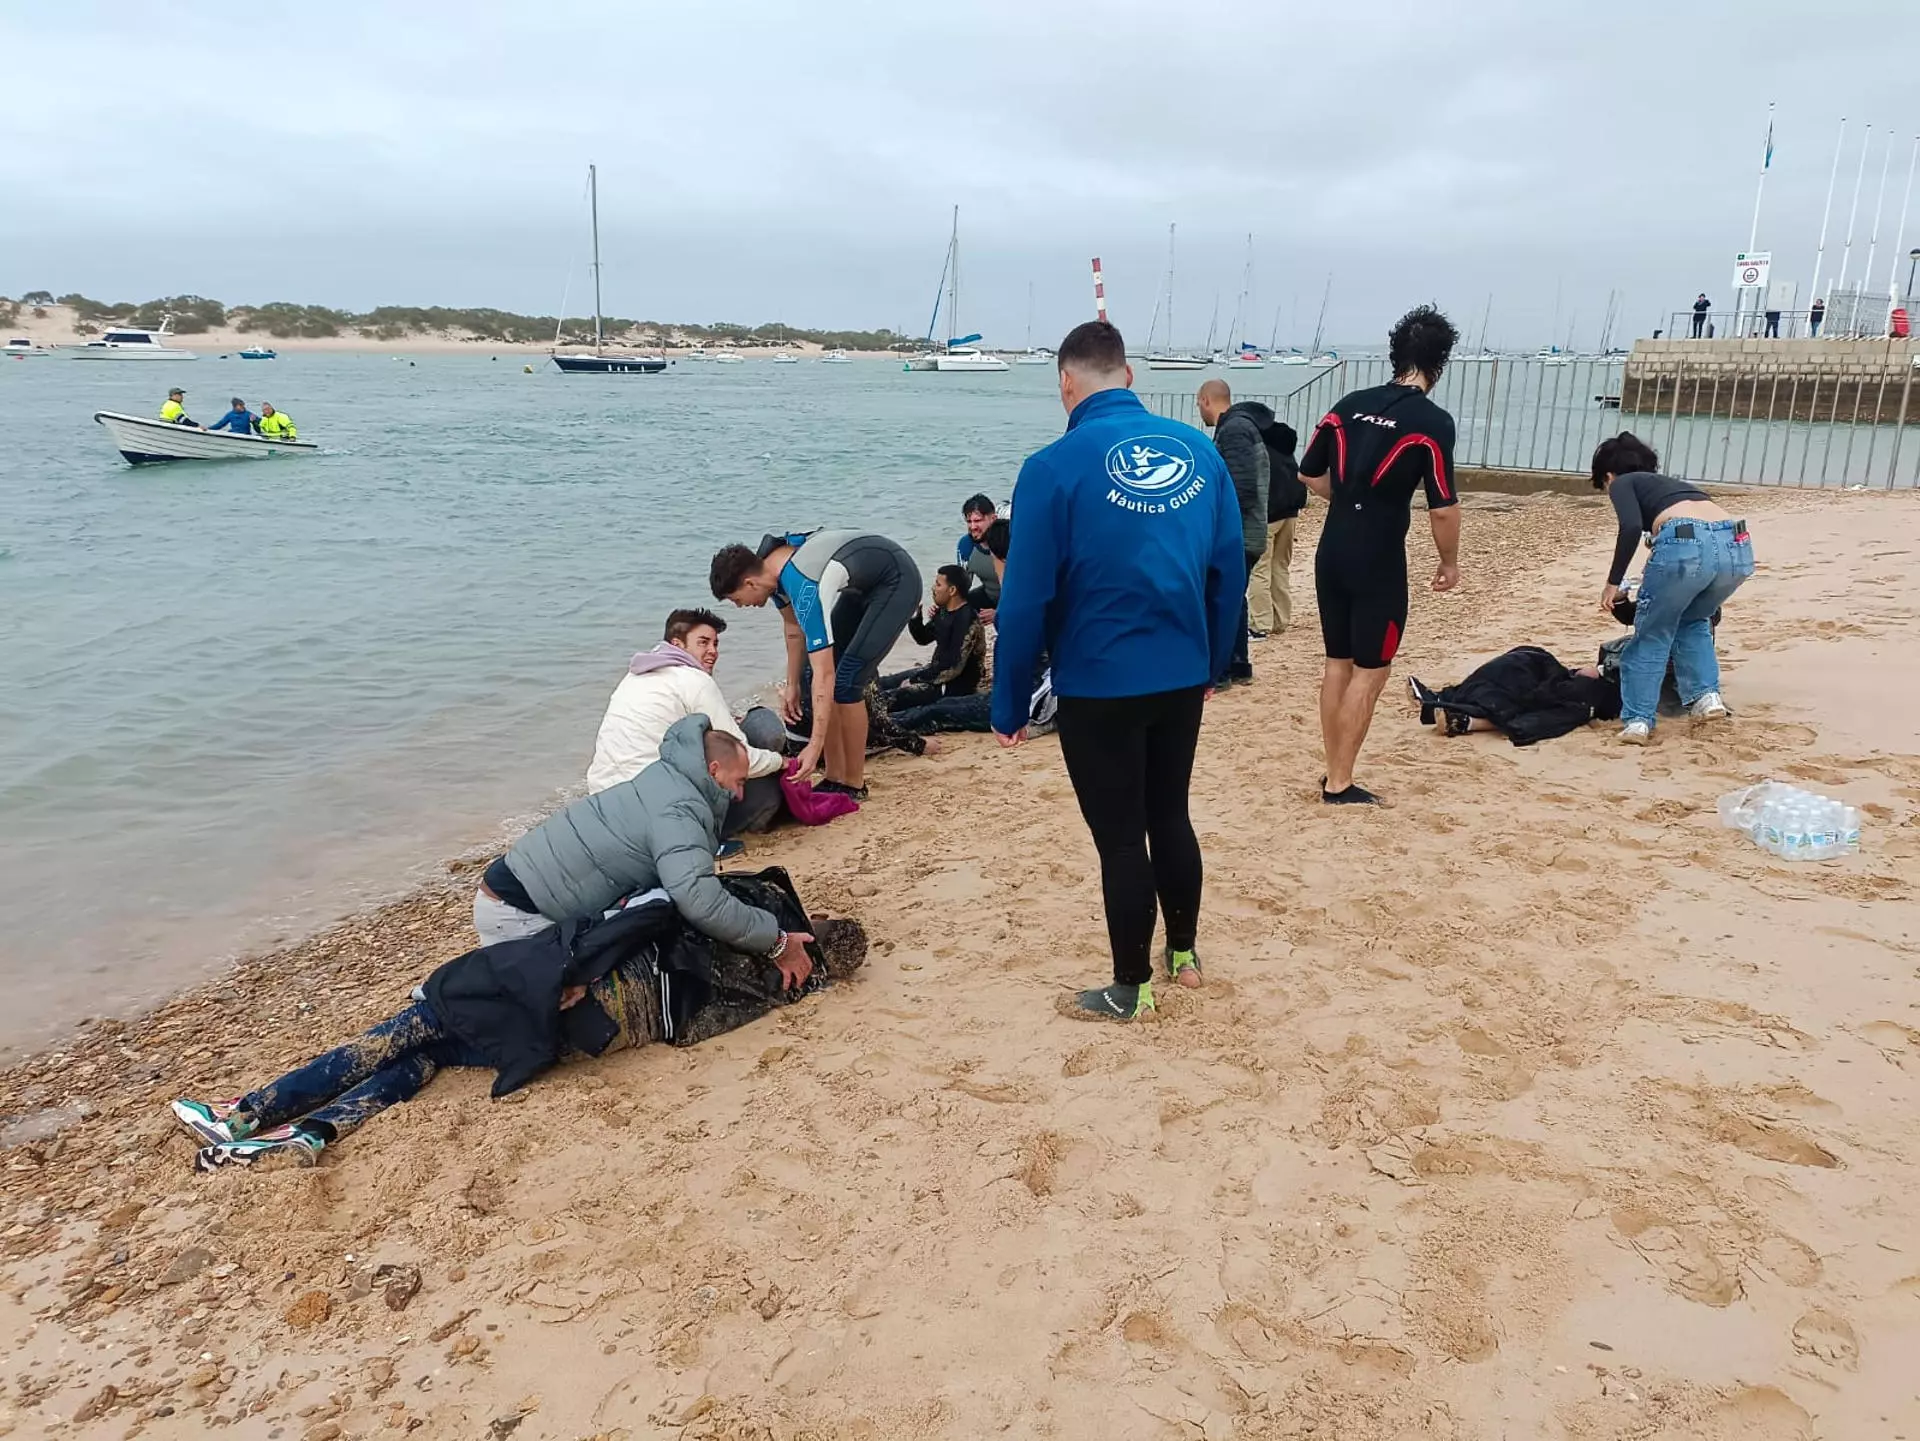 Al rescate de los inmigrantes obligados a saltar en Cádiz: “Si no estamos ahí, hubieran muerto los ocho”